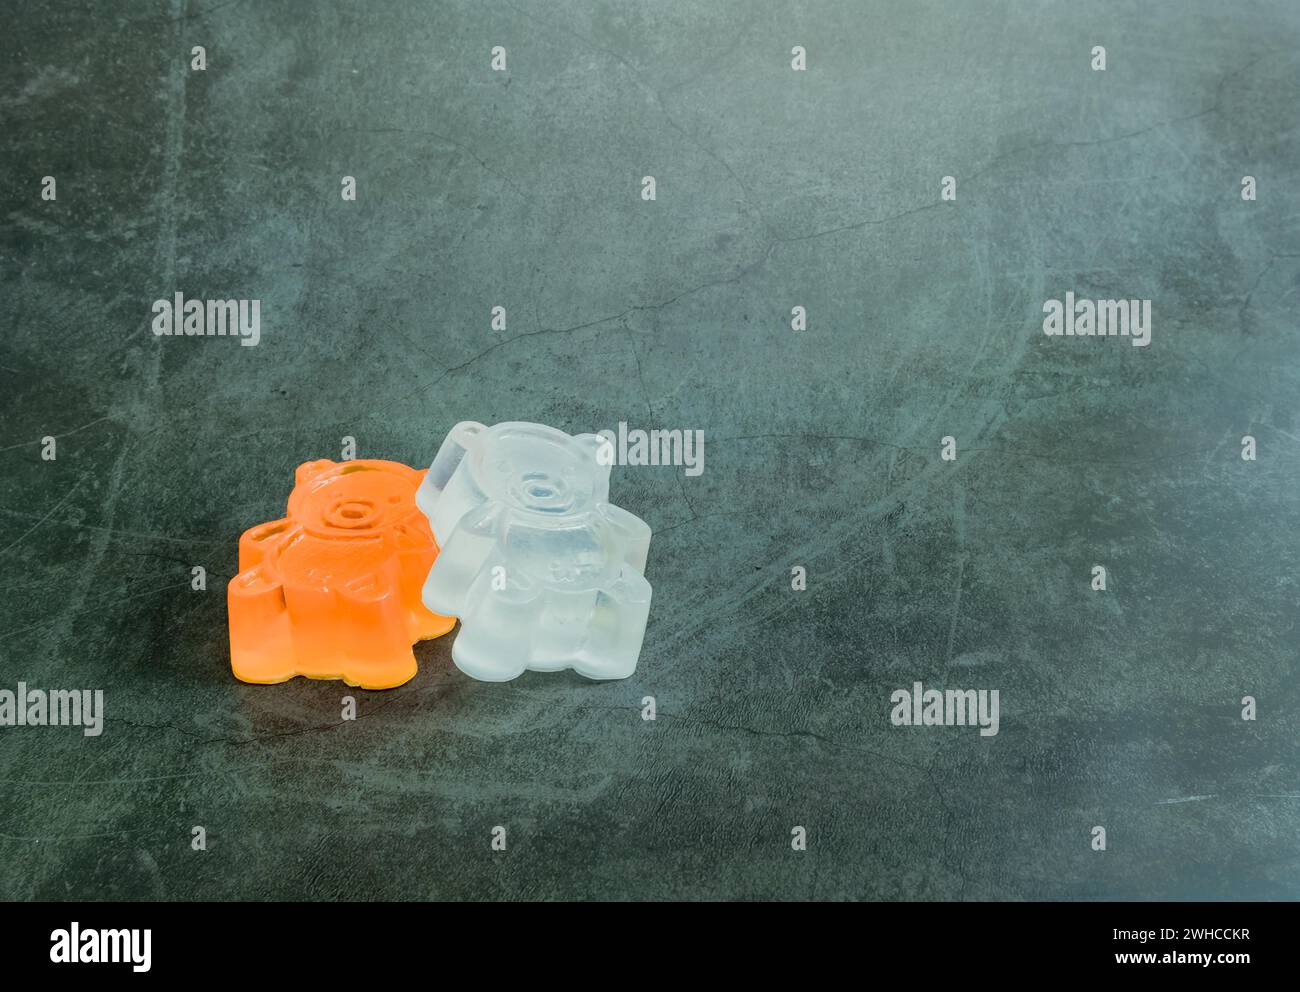 Un sapone bianco fatto in casa, arancione, simile a un orso giocattolo su sfondo nero Foto Stock